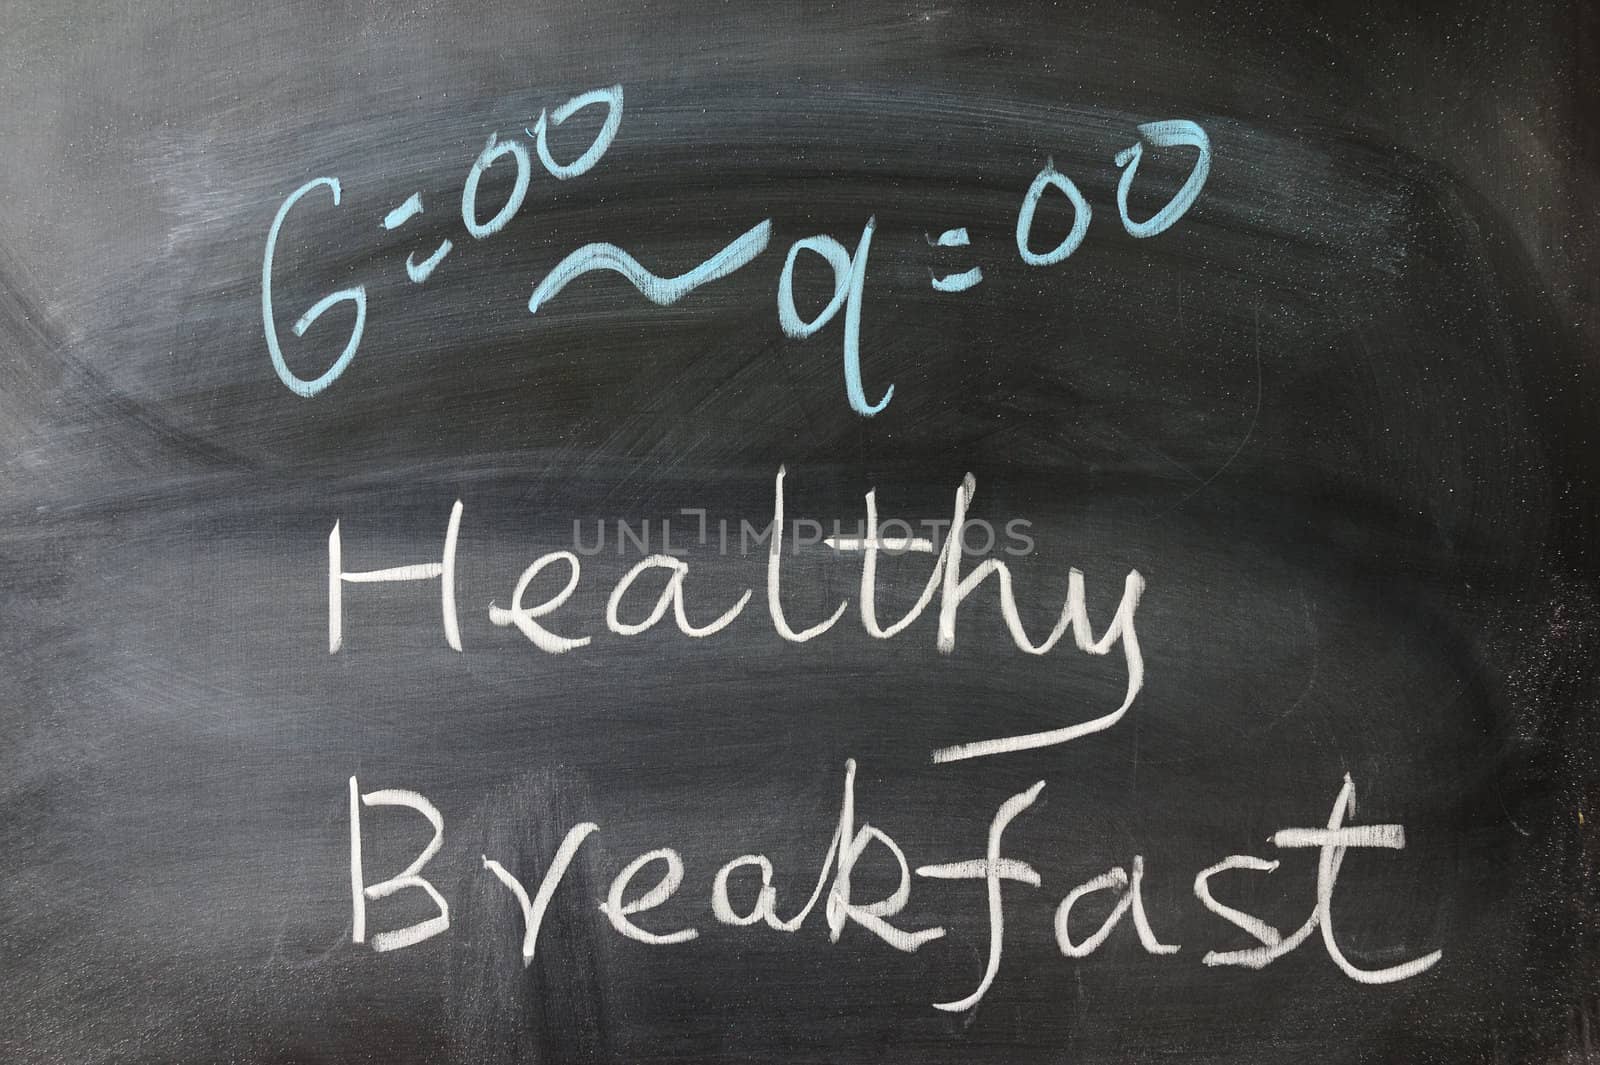 Healthy breakfast words written on the blackboard